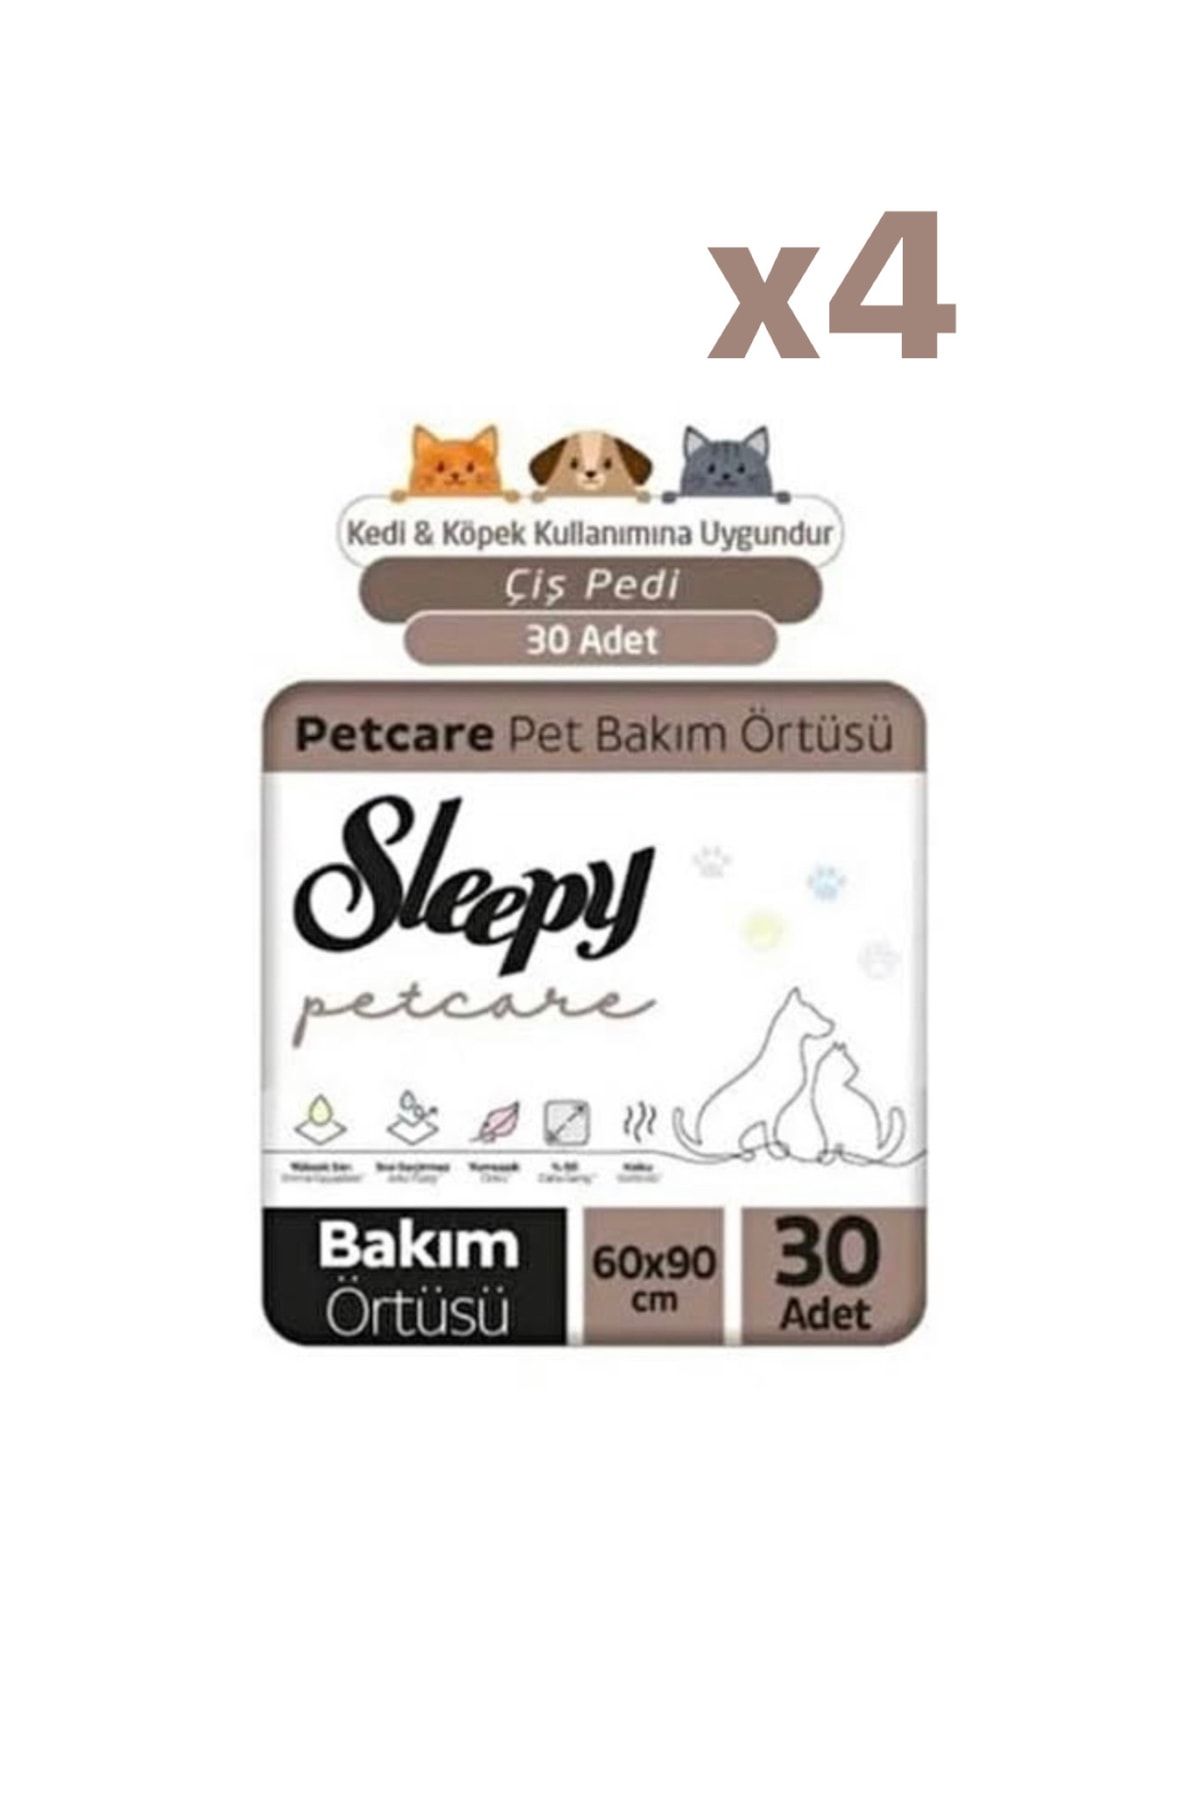 Sleepy Çiş Pedi Petcare Kedi Ve Köpek Kullanımına Uygun 120 Adet